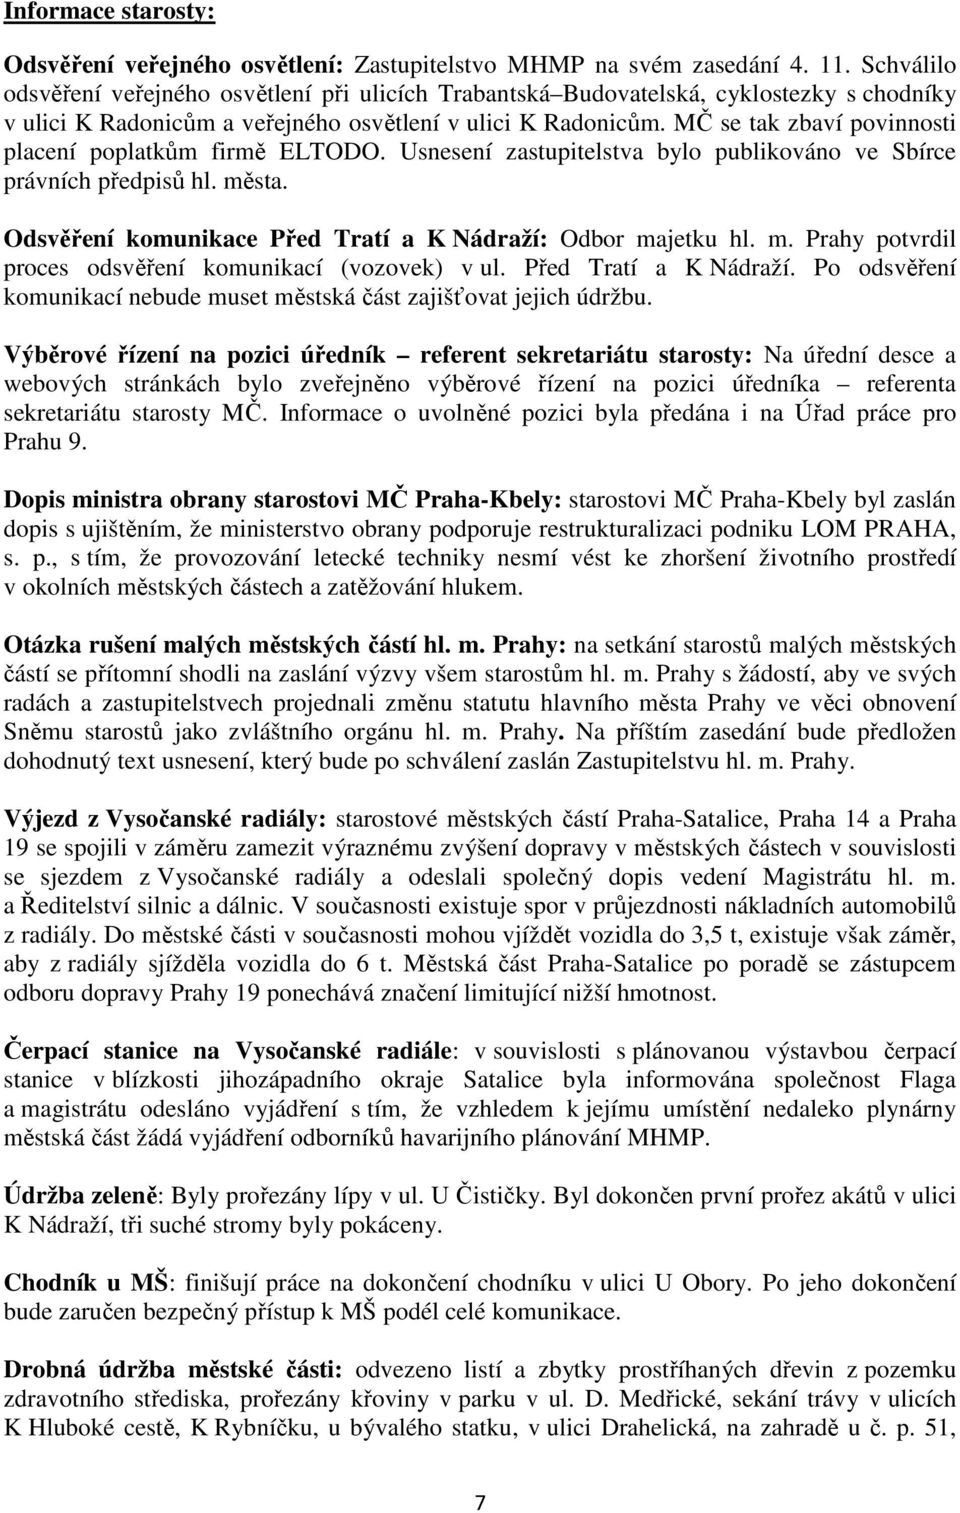 MČ se tak zbaví povinnosti placení poplatkům firmě ELTODO. Usnesení zastupitelstva bylo publikováno ve Sbírce právních předpisů hl. města.